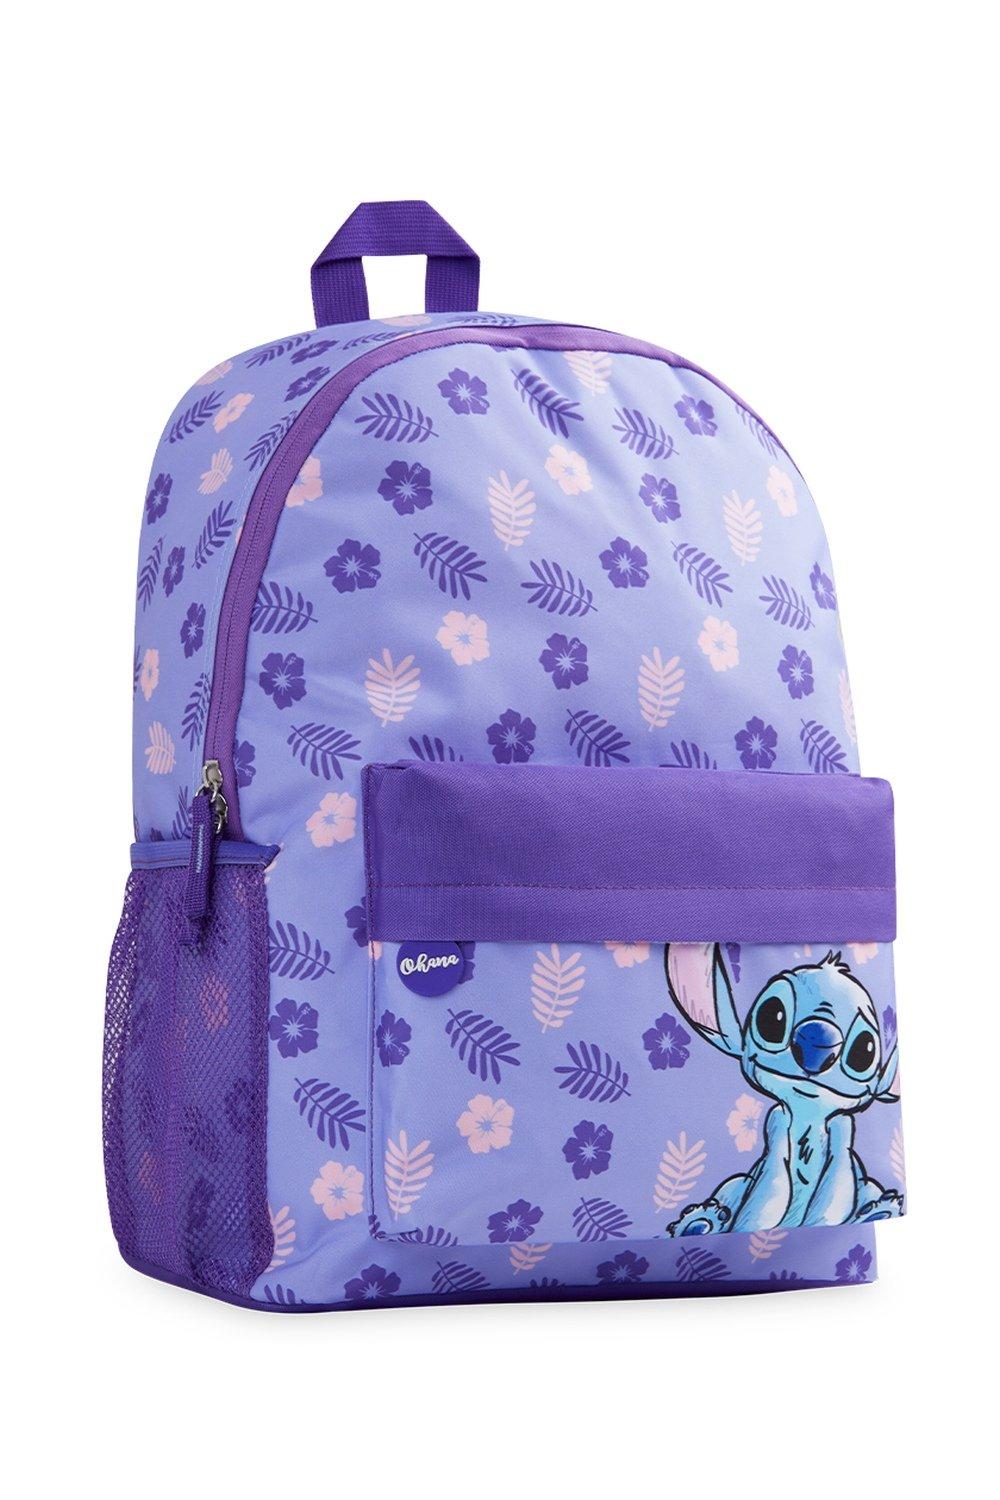 цена Школьная сумка Лило и Стич Disney, фиолетовый